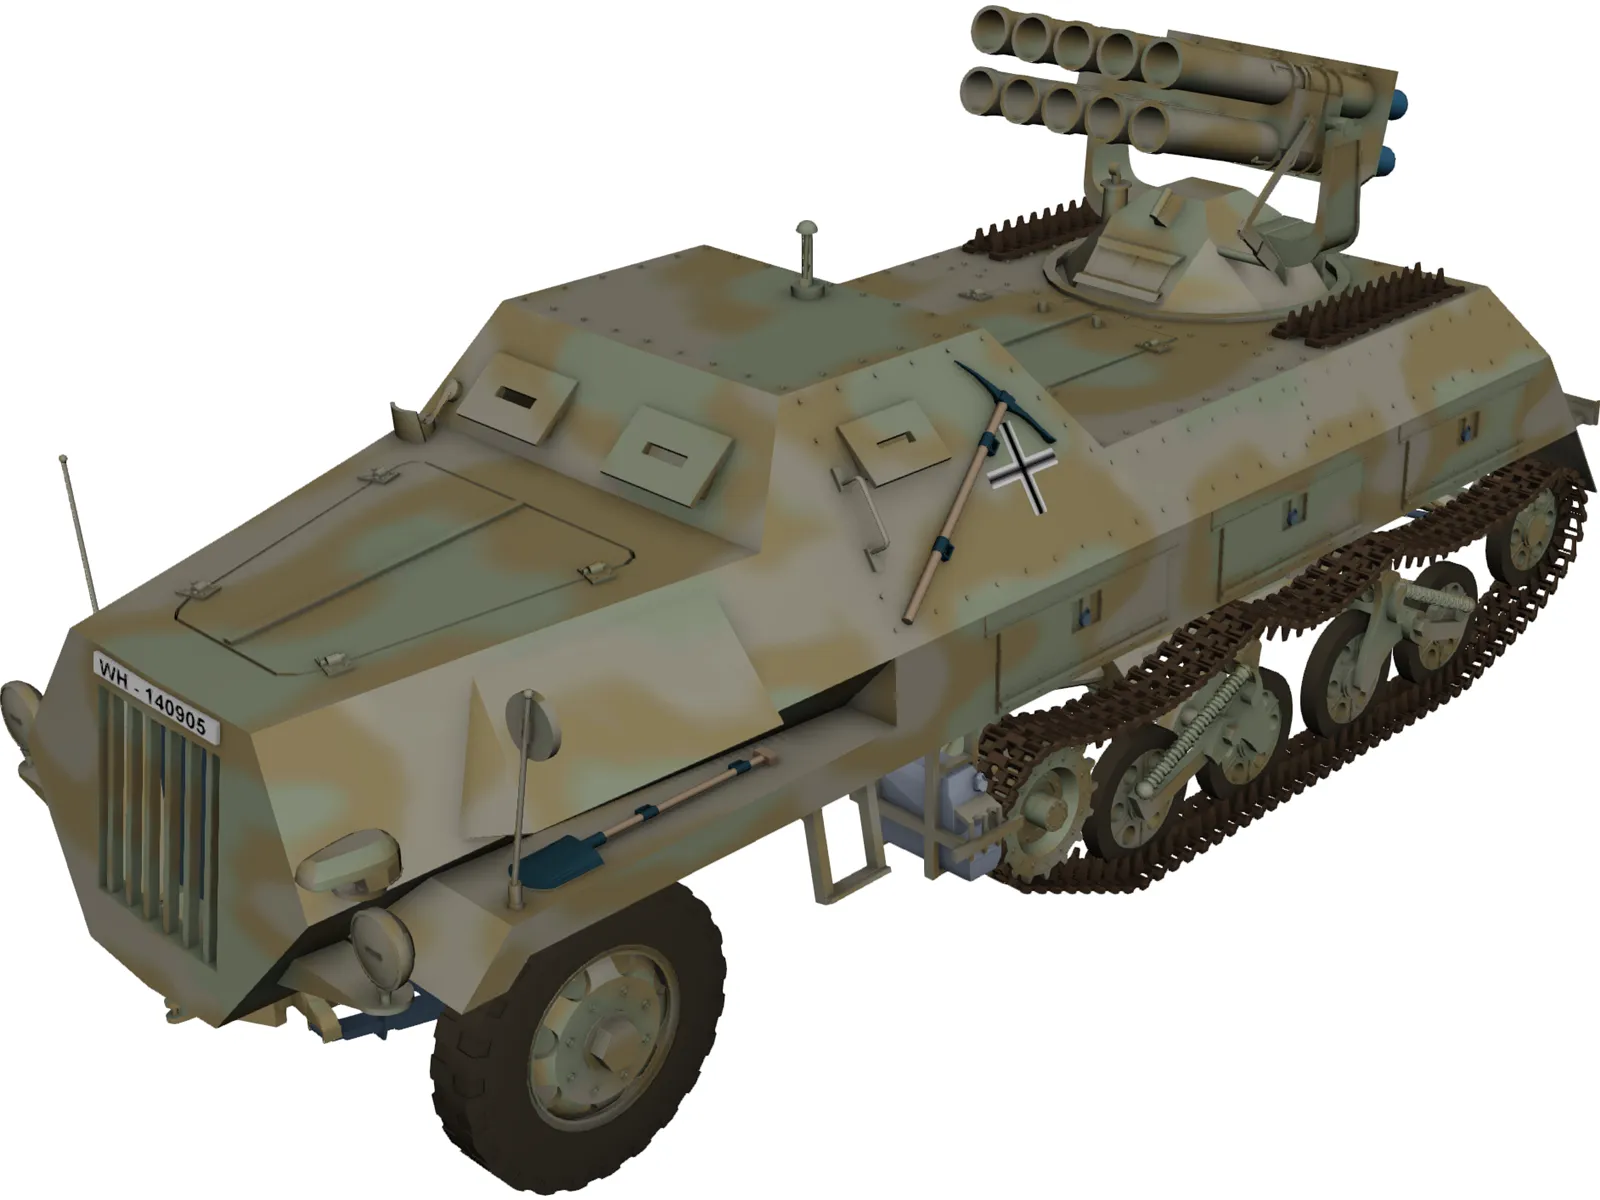 Panzerwerfer 42 3D Model